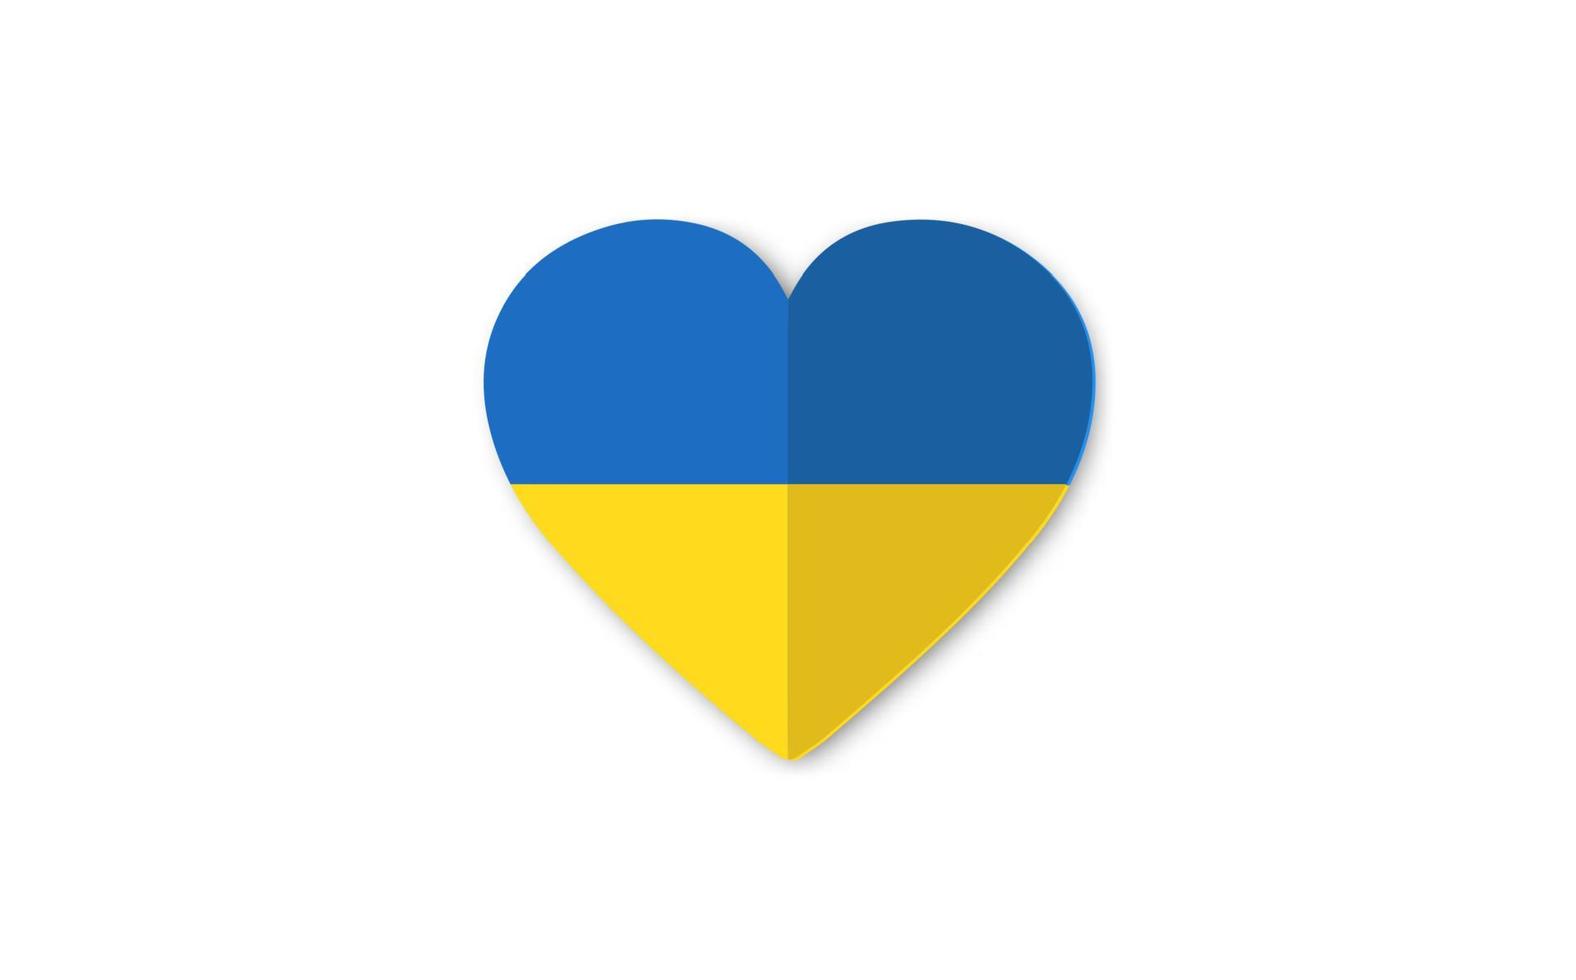 Oekraïne nationale vlag, hart vorm icoon met kleuren van Oekraïense vlag. papier gesneden stijl. origami symbool, poster, banner van crisis in Oekraïne concept. vector geïsoleerd op witte achtergrond